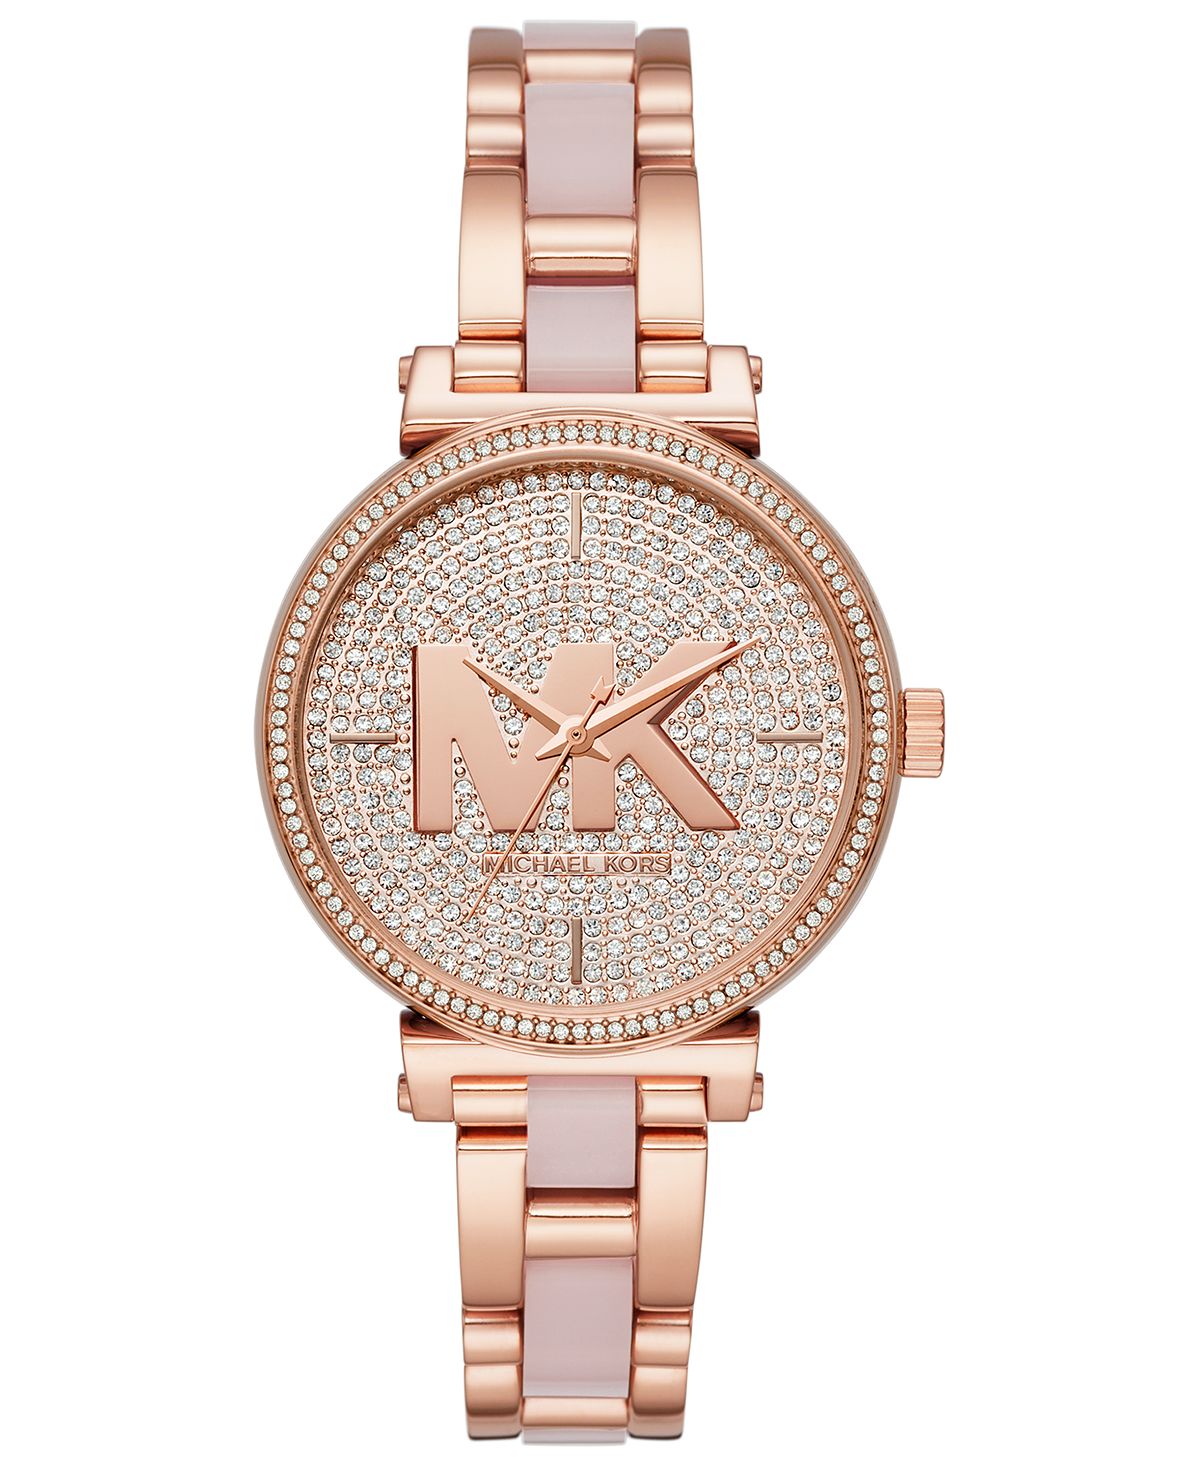 

Женские часы Sofie из нержавеющей стали цвета розового золота с румяным ацетатным браслетом, 36 мм Michael Kors, золотой